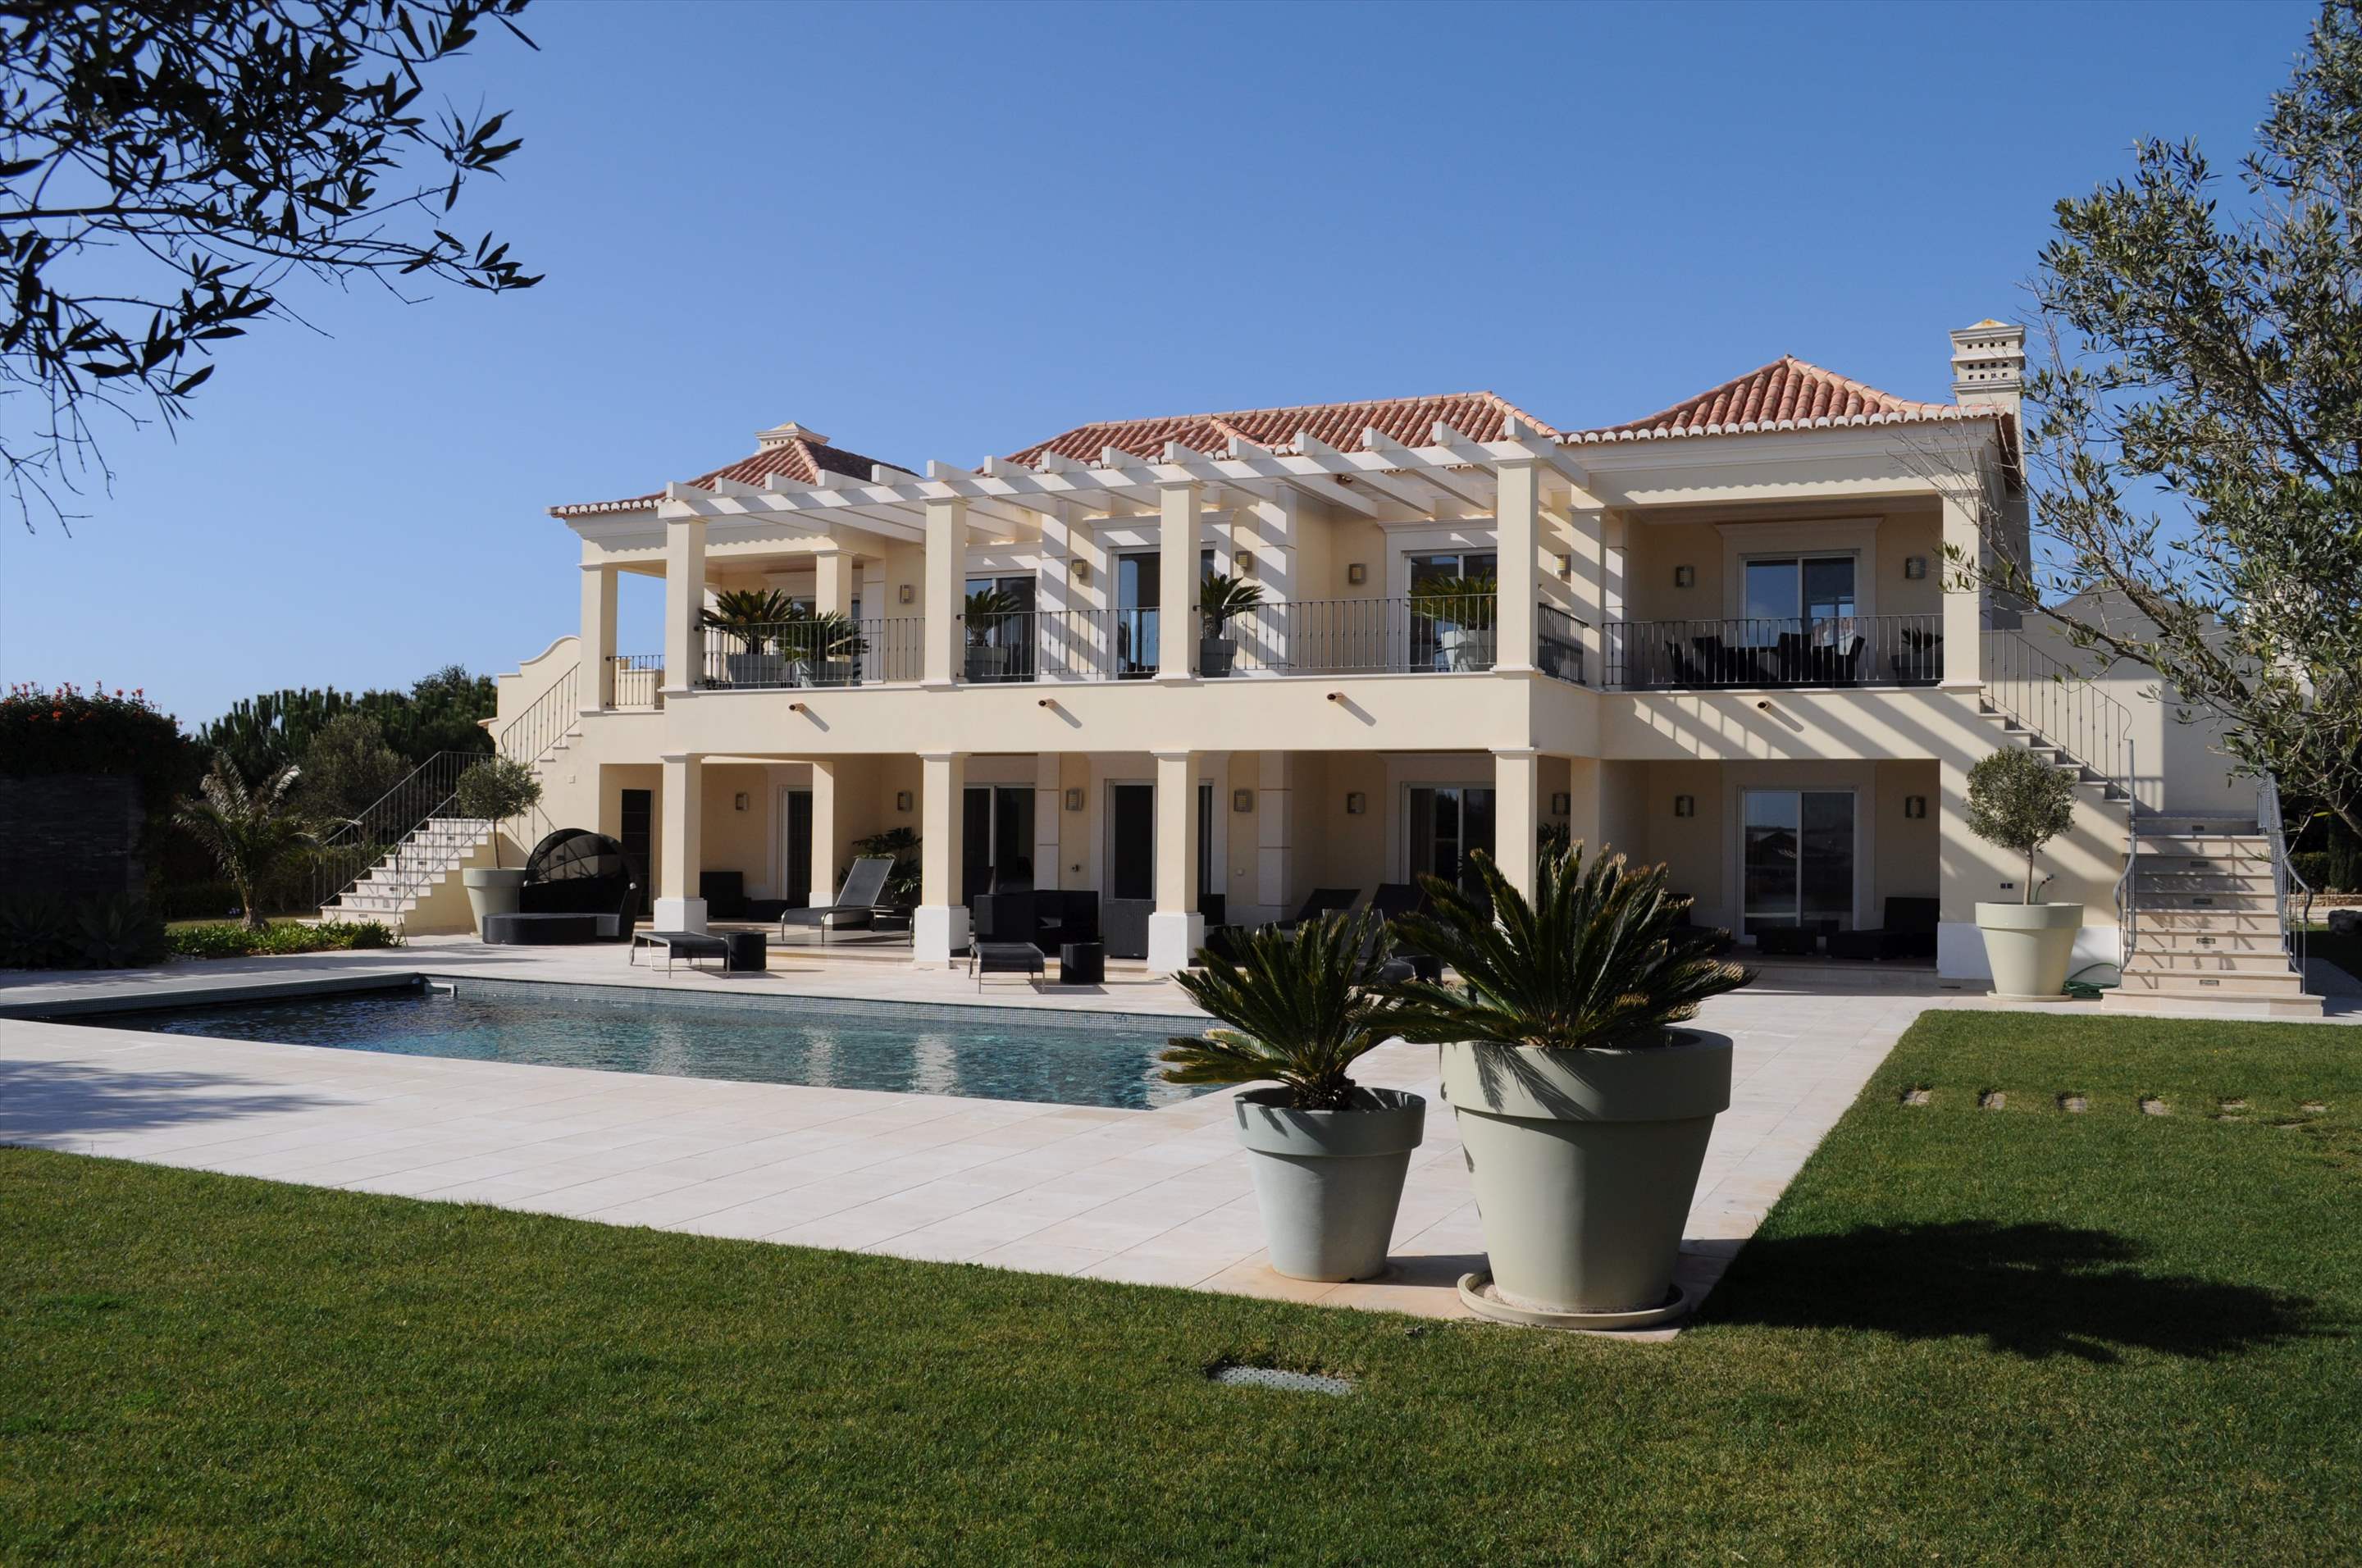 Martinhal Luxury Villa no.25, 4 bedroom villa in Martinhal Sagres, Algarve